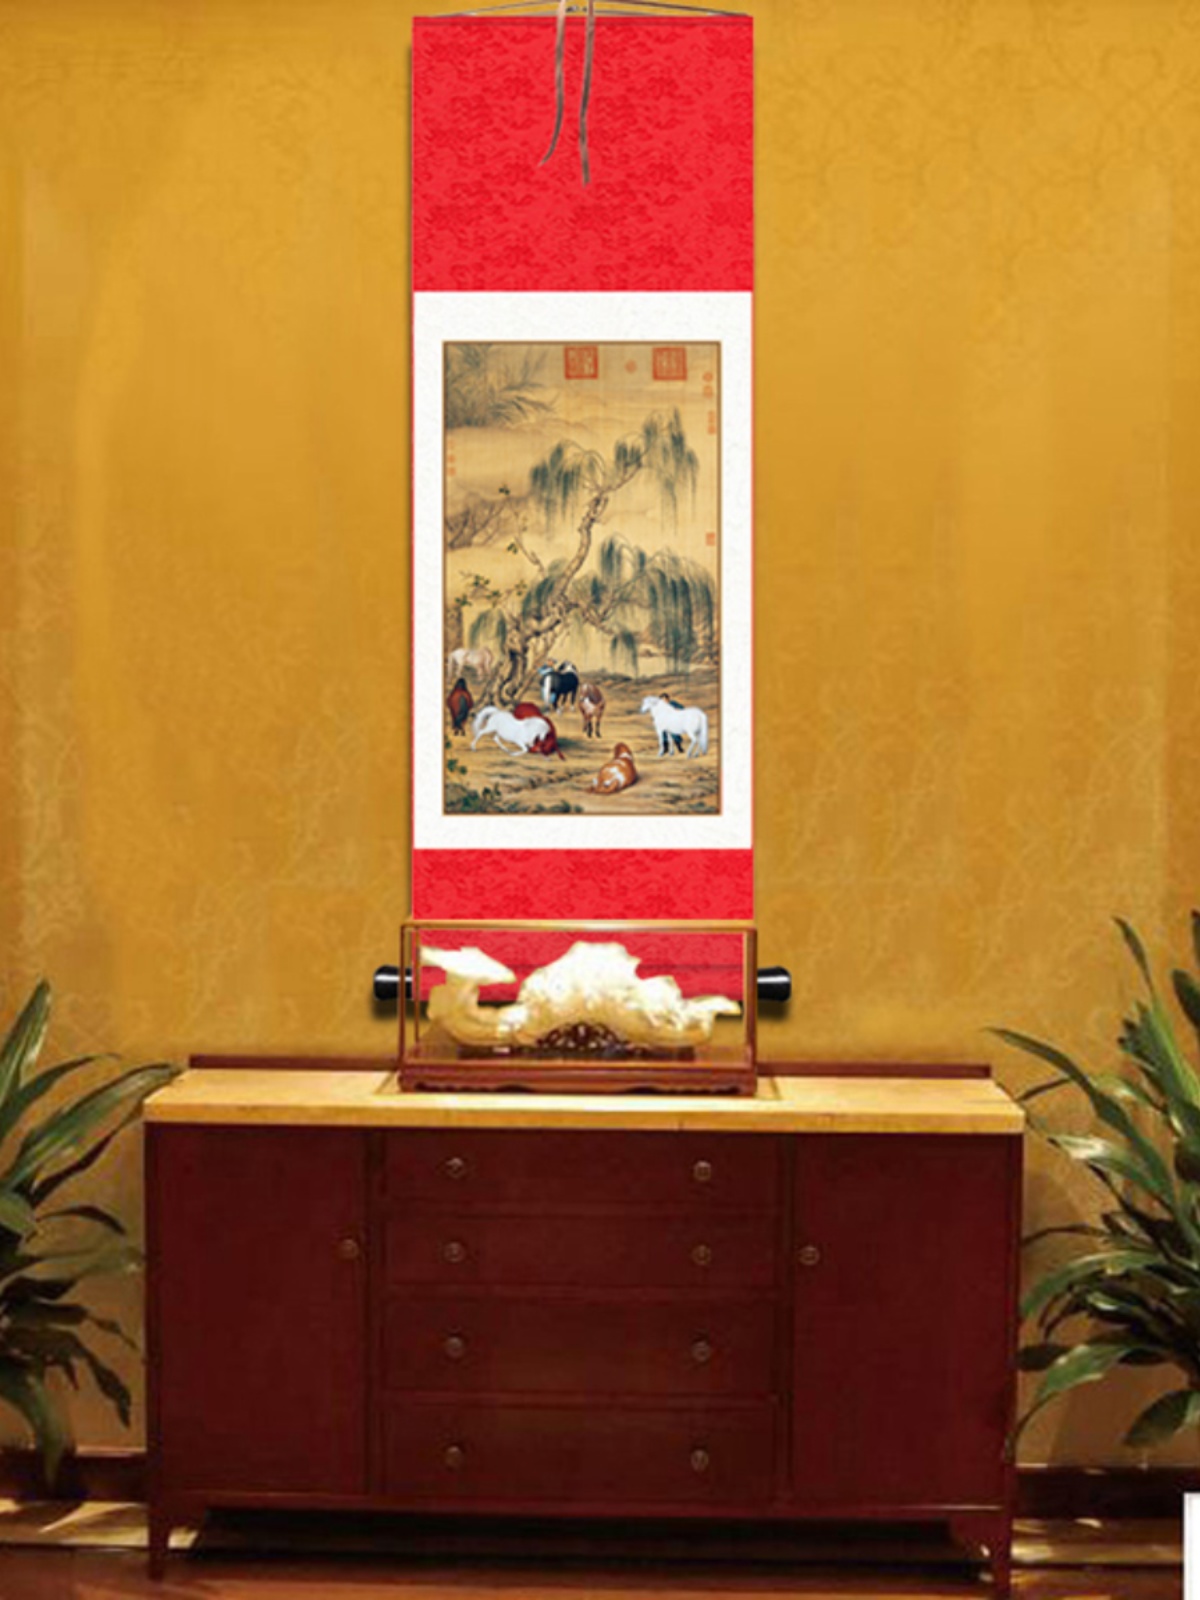 朗世宁画八骏图客厅挂画八匹骏马图百骏图马的装饰画红色玄关卷轴